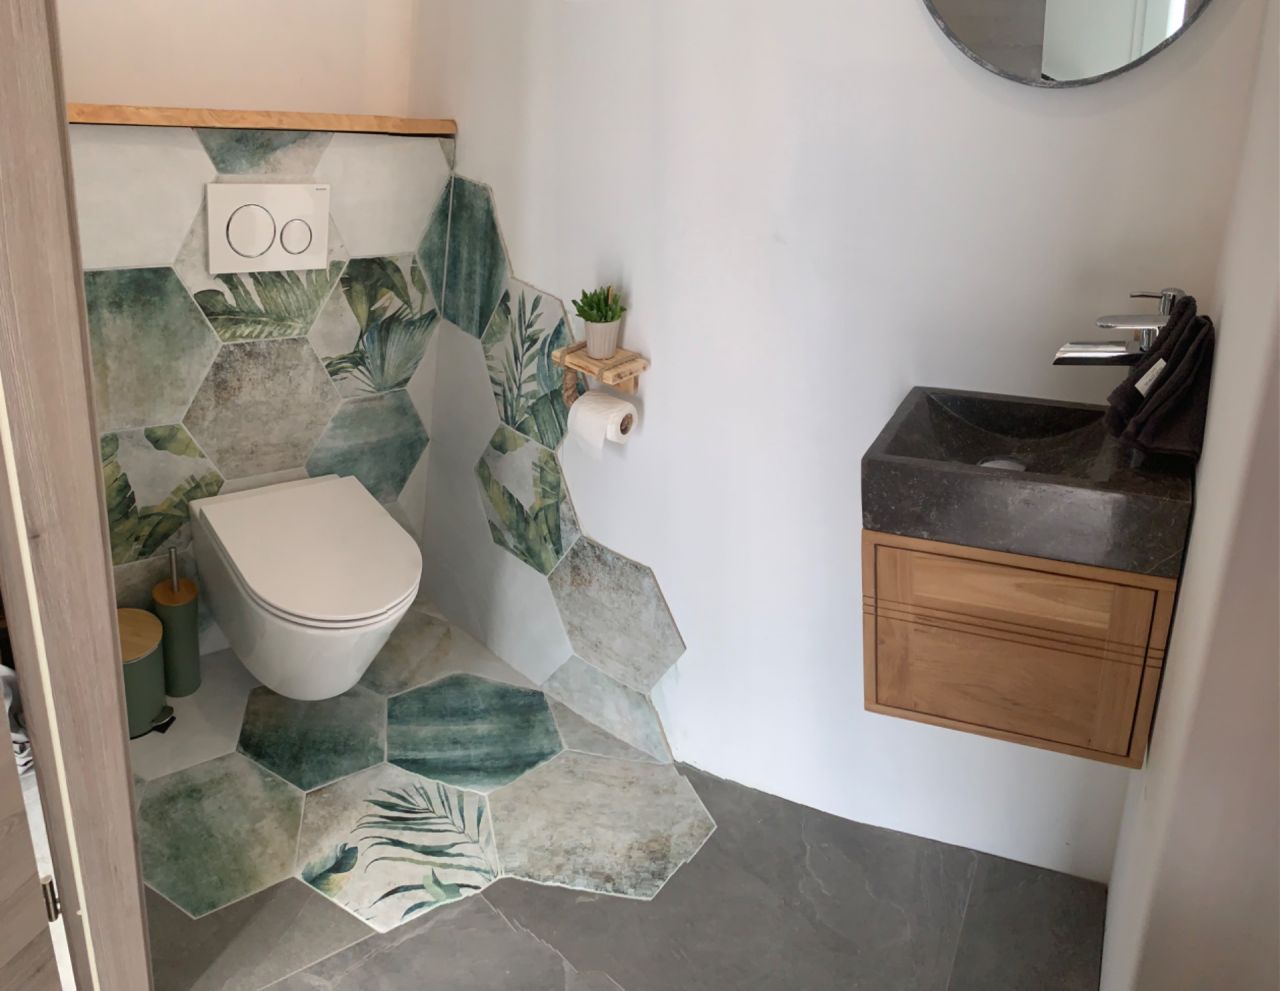 Les toilettes jungle du RDC 
Lave-mains en teck et pierre de chez Tikamoon